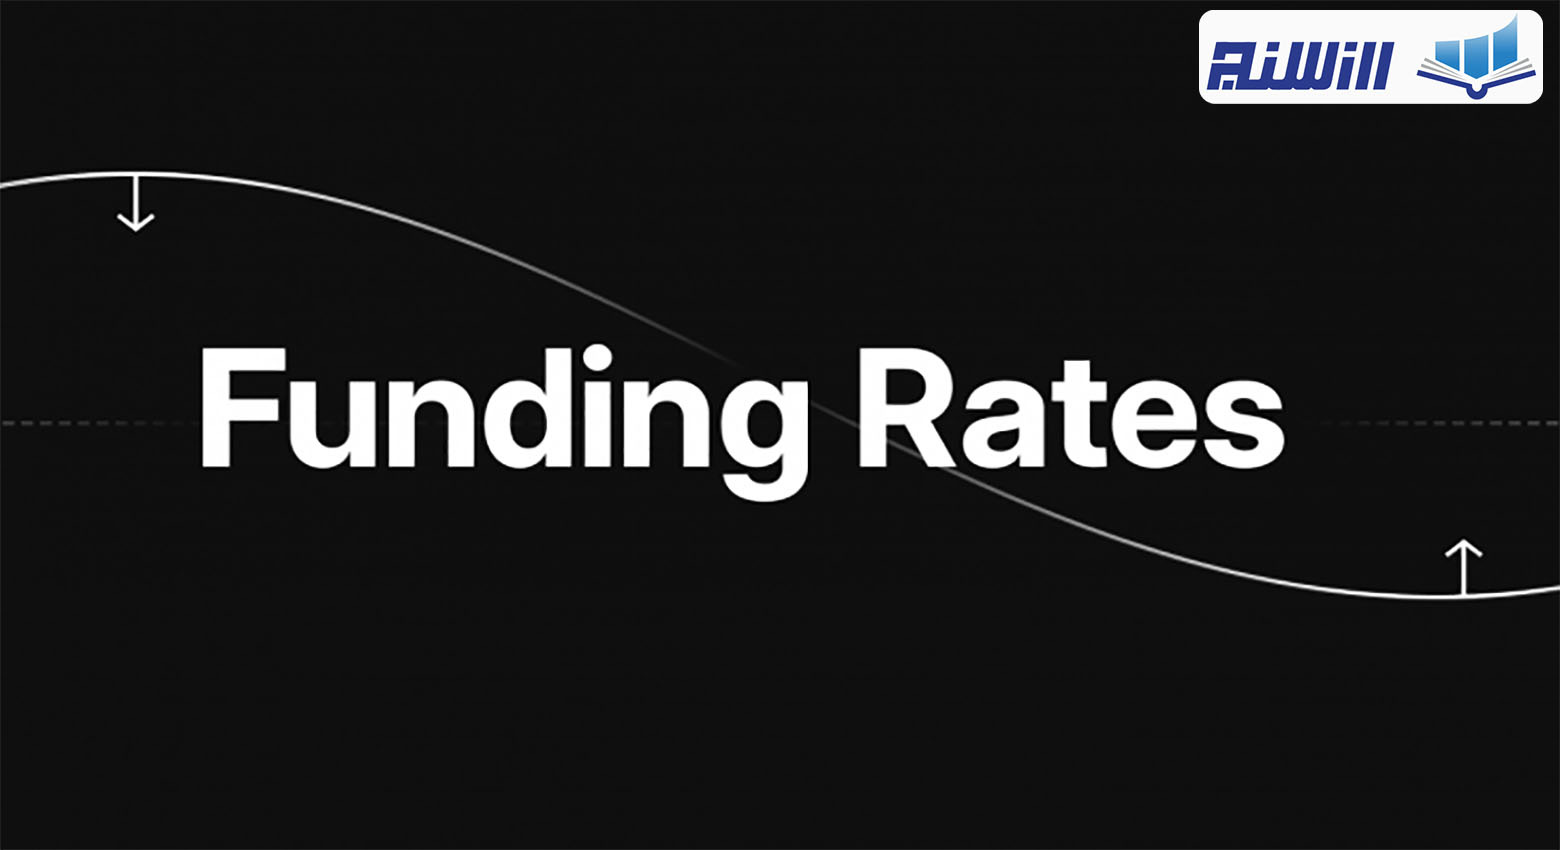 فاندینگ ریت چیست؟ ویدیوی آشنایی با Funding Rate